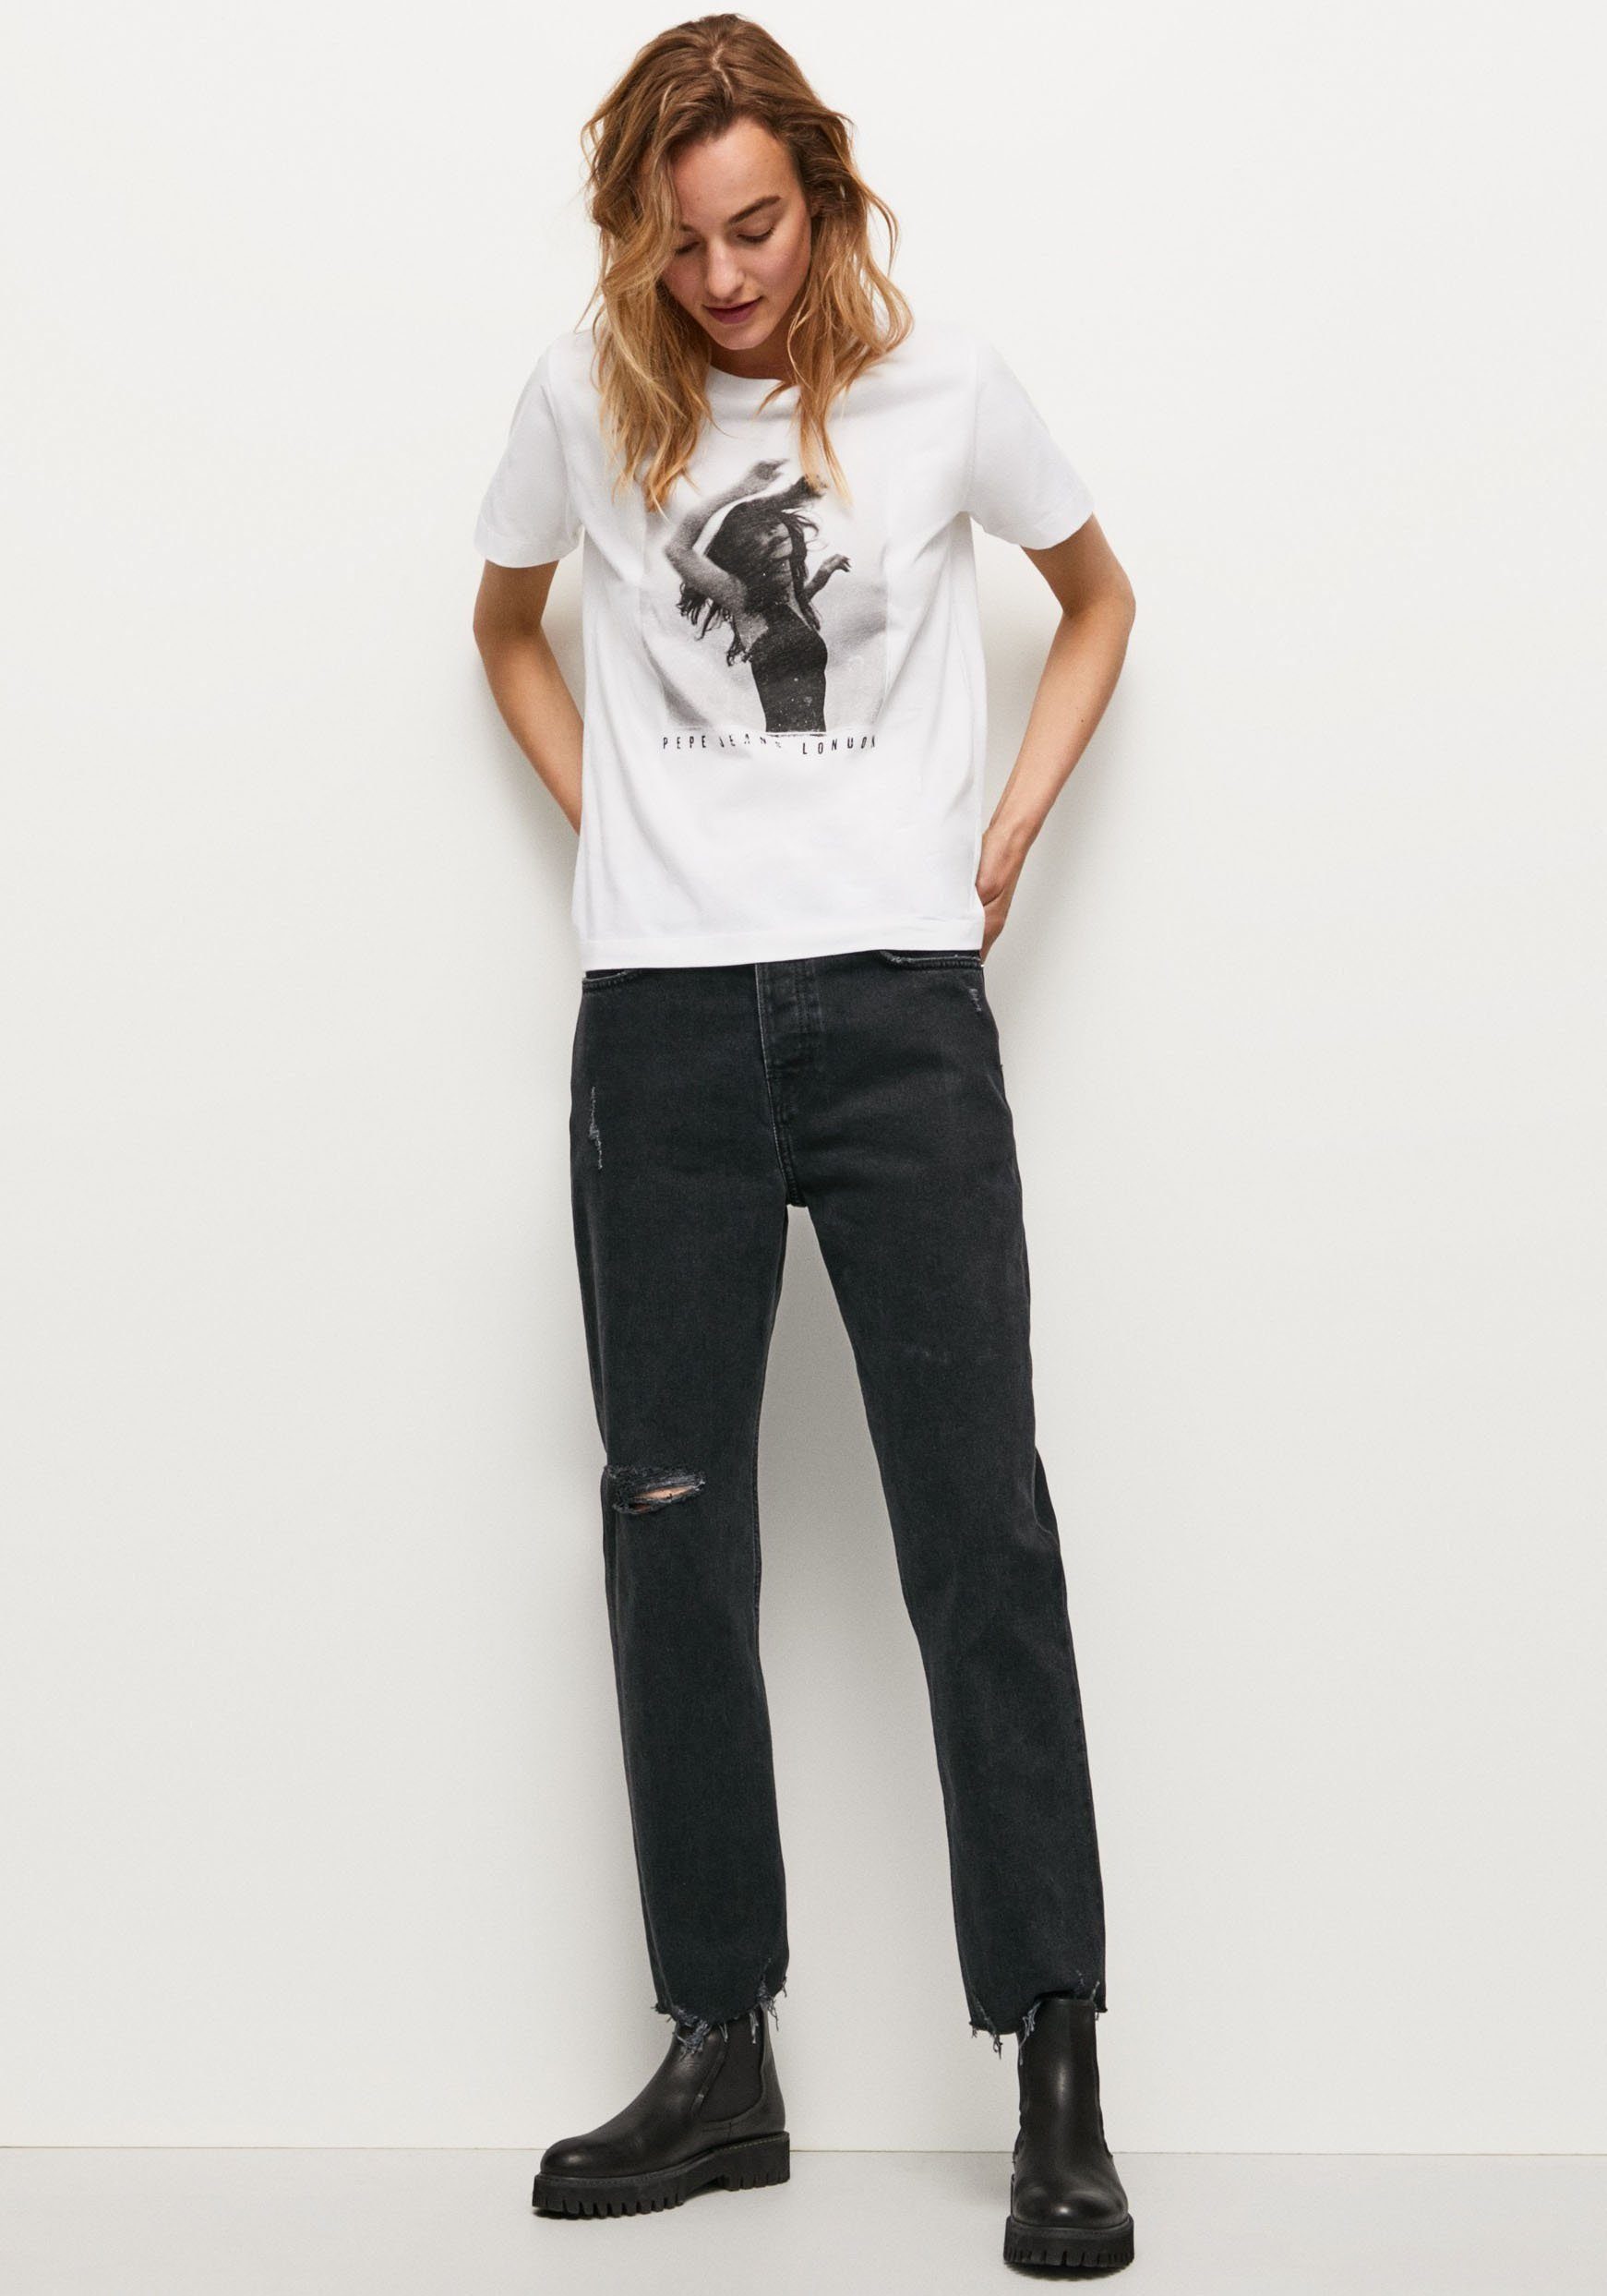 Frontprint T-Shirt und in figurbetonter Jeans Pepe 800WHITE tollem mit Passform SONYA markentypischem